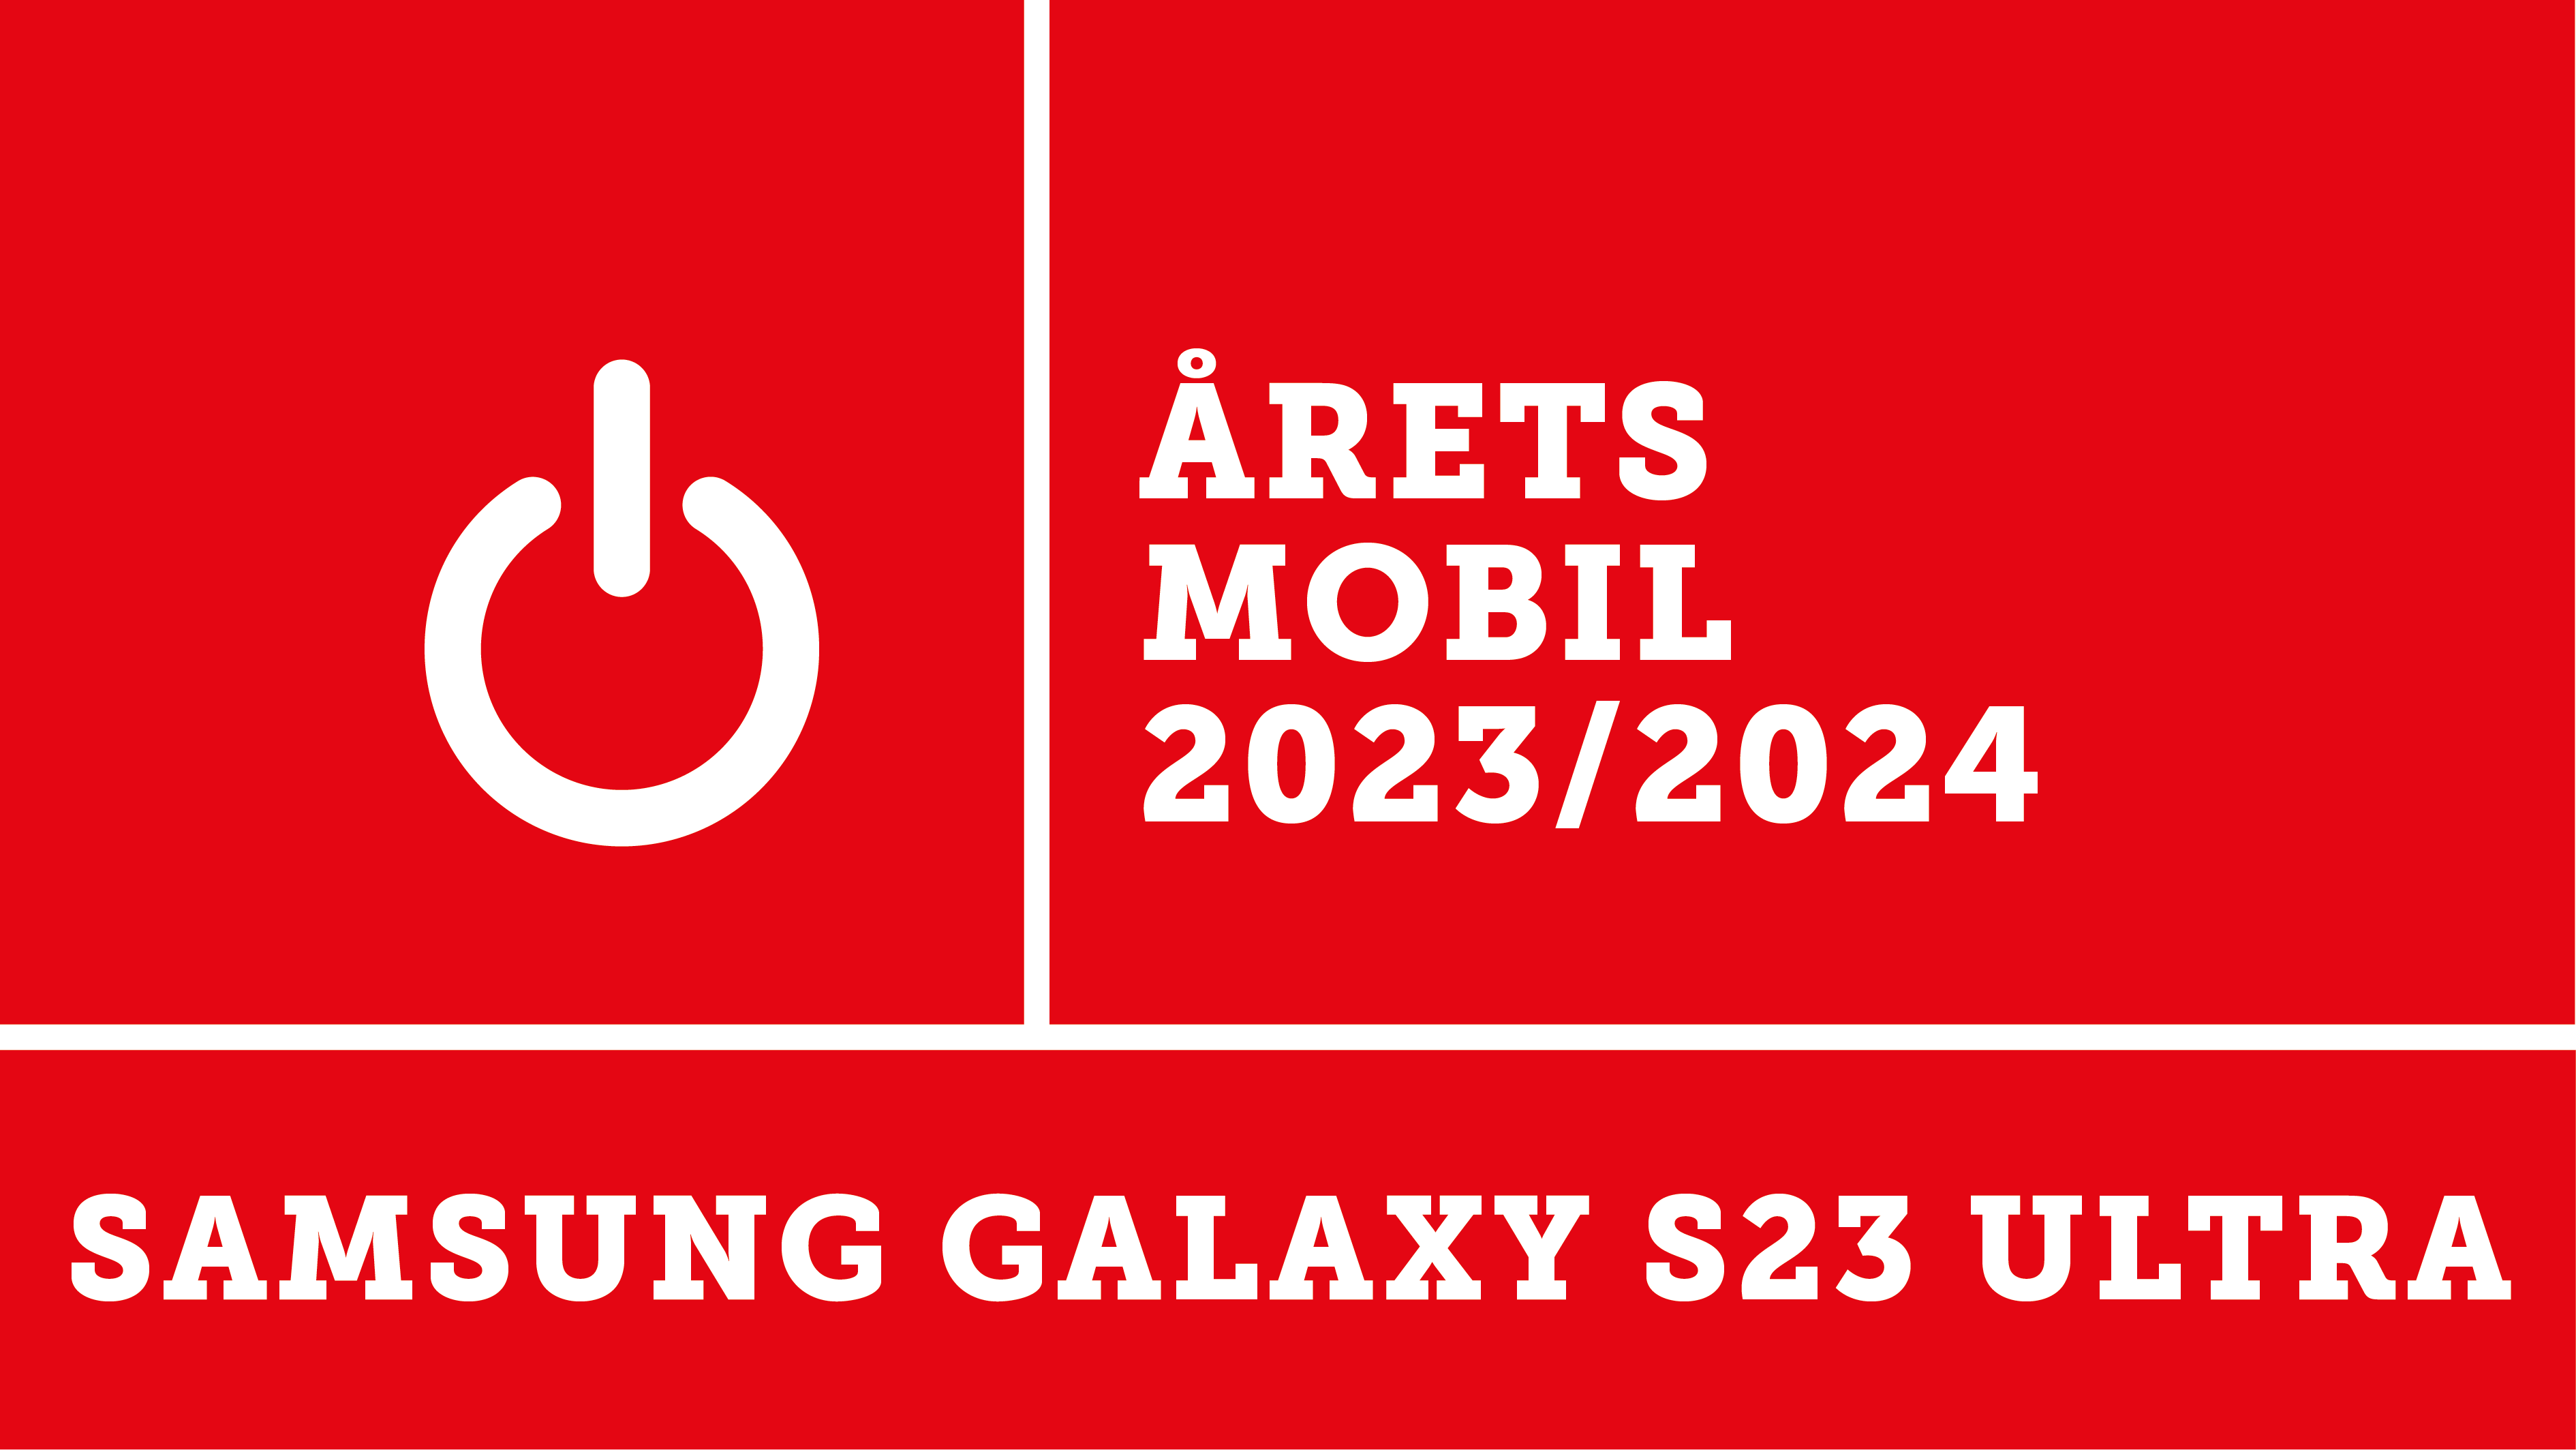 Samsung Galaxy S23 Ultra er kåret til årets mobil 2023 av Elektronikkbransjen. 